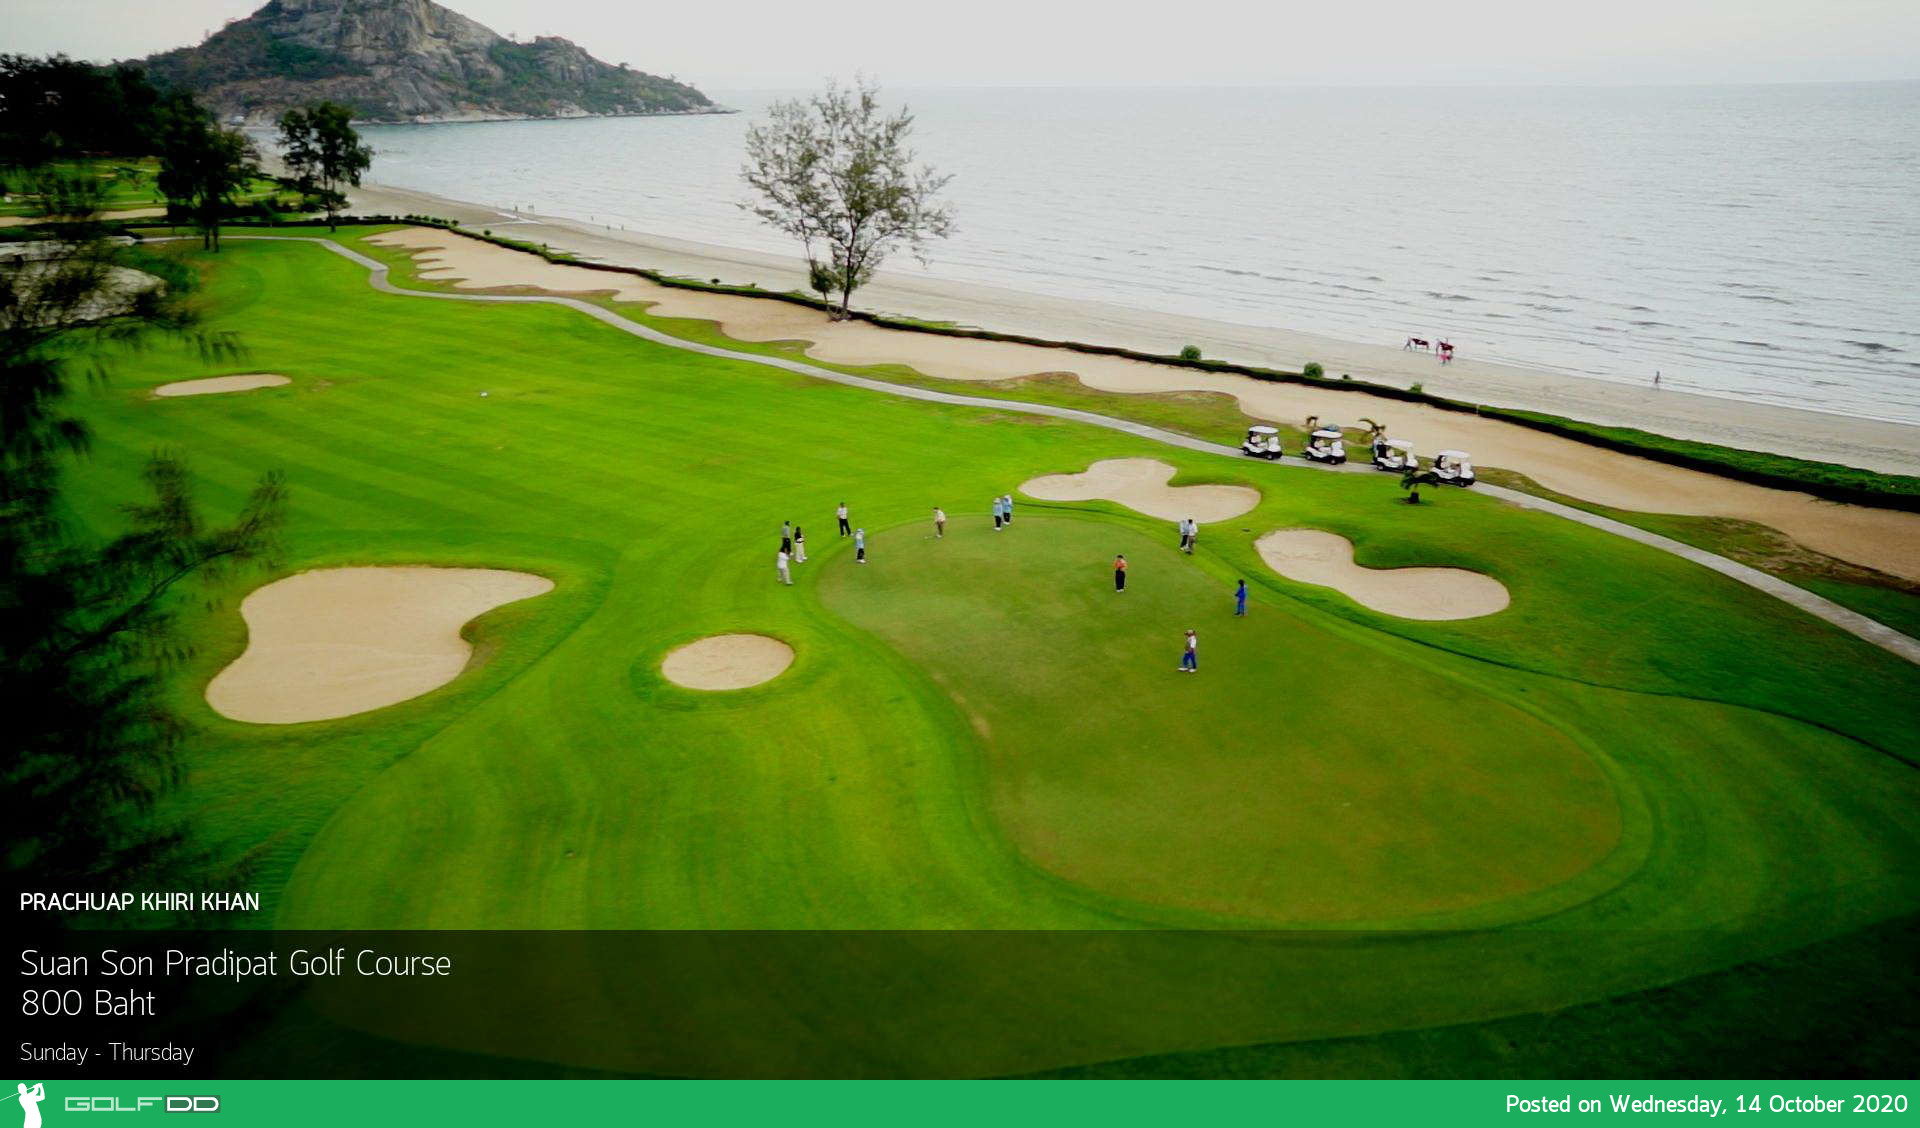 ชุมนุมดุเดือด ณ อนุสาวรีย์ สถานะการตึงเคลียด หนี้ชุมนุมเข้าสนามกอล์ฟกัน Suan Son Pradipat Golf Course ปรับราคาใหม่ 